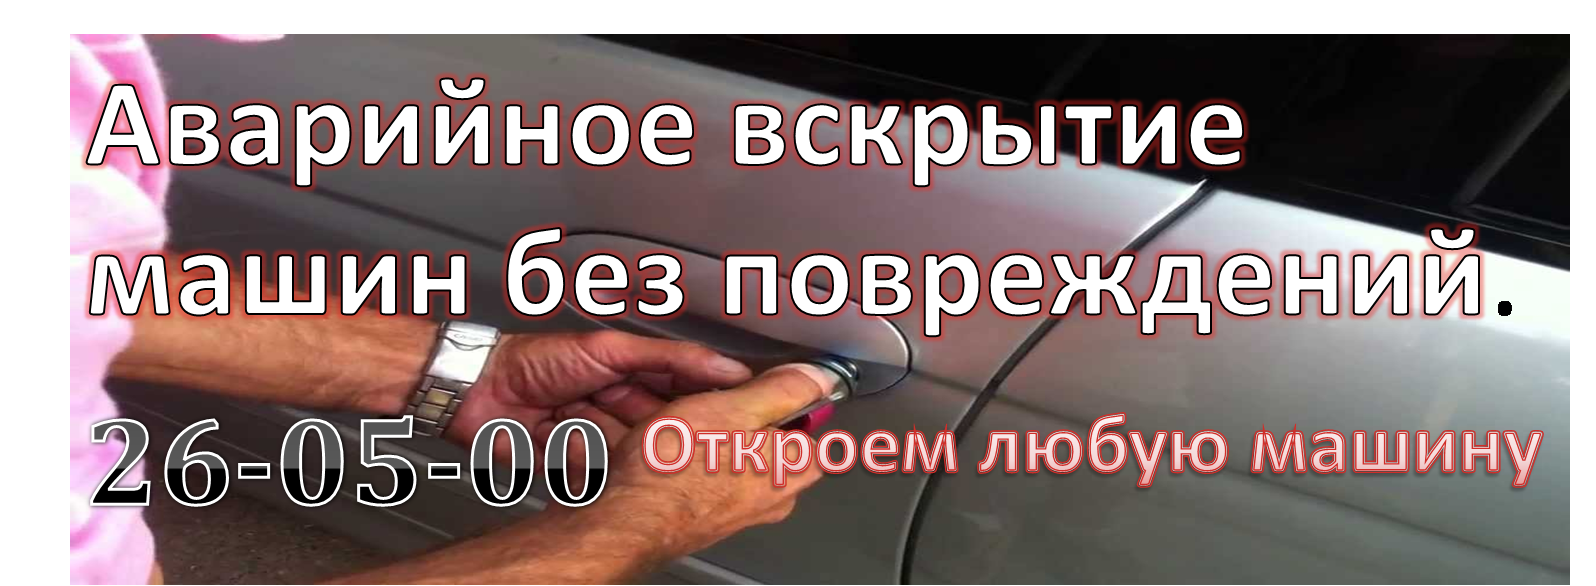 открывание машин в Абакане, Черногорске и Минусинске